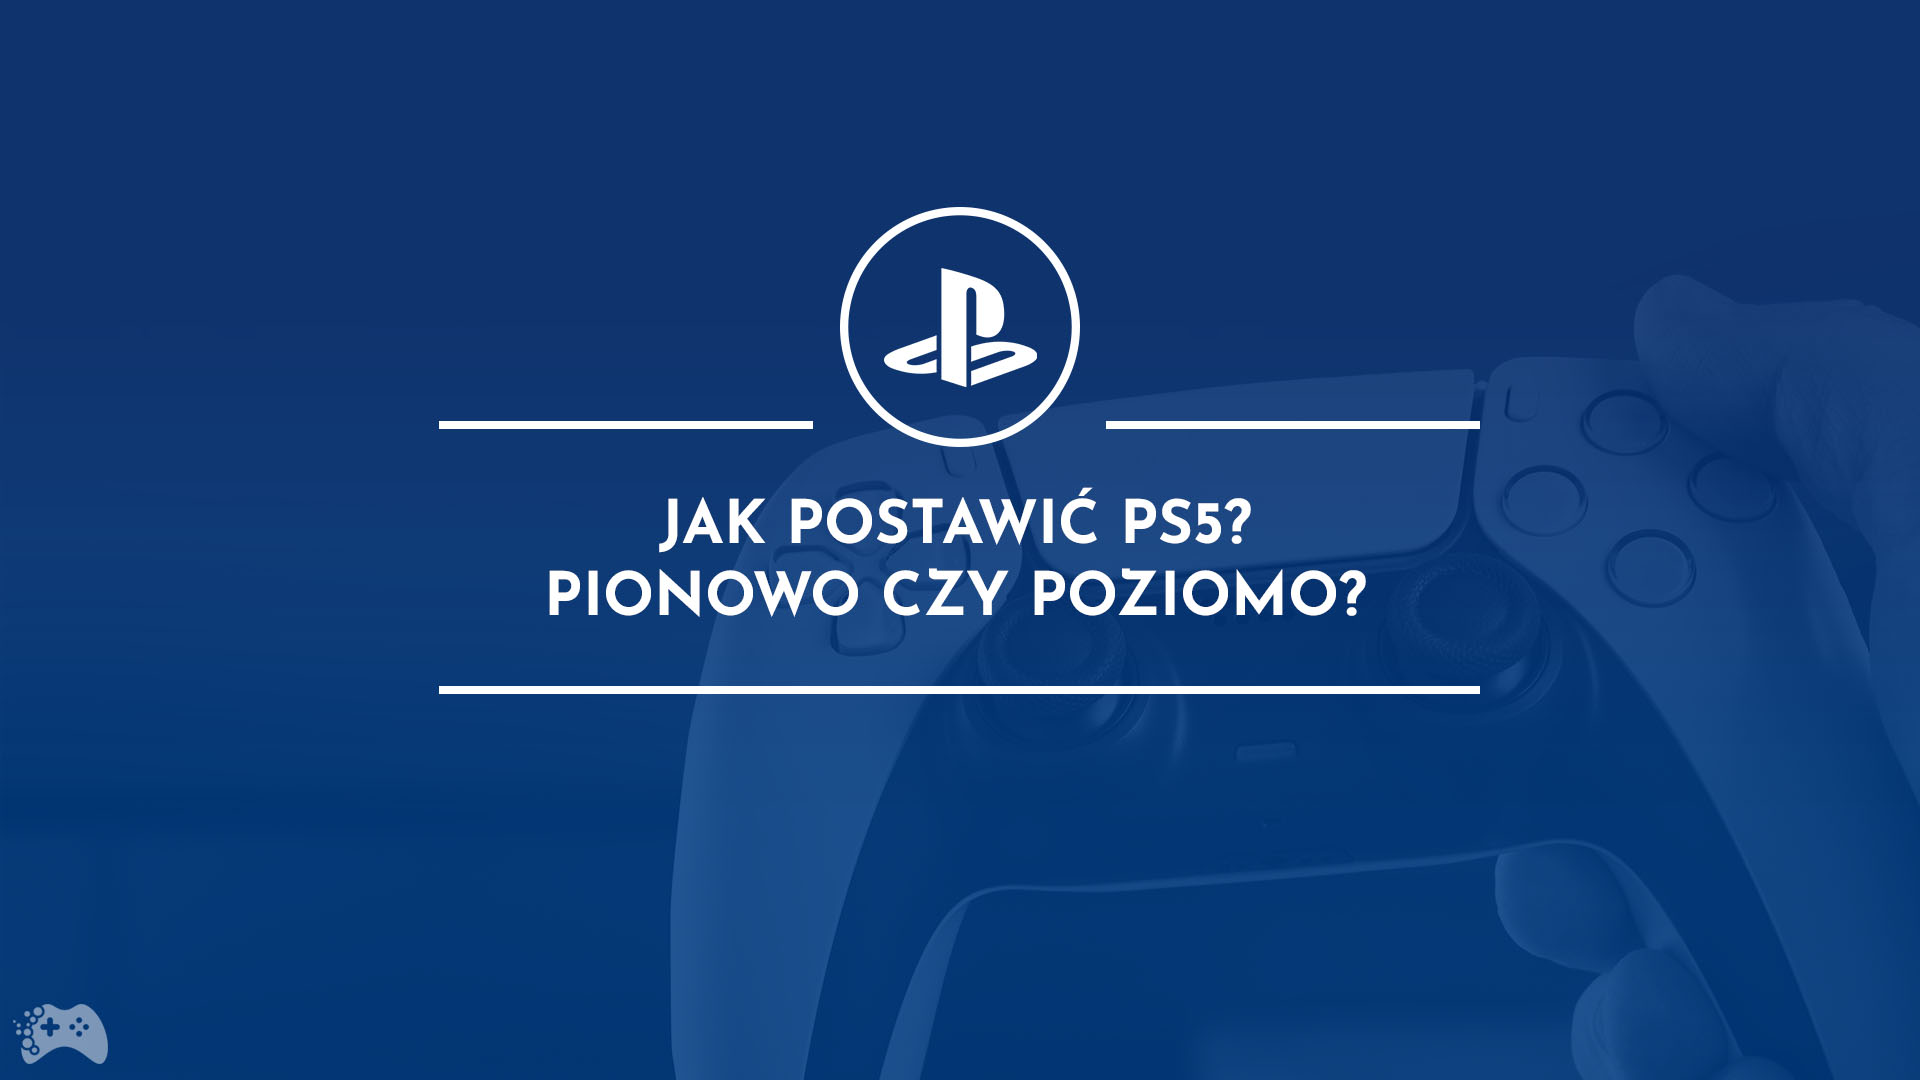 PS5 pionowo czy poziomo